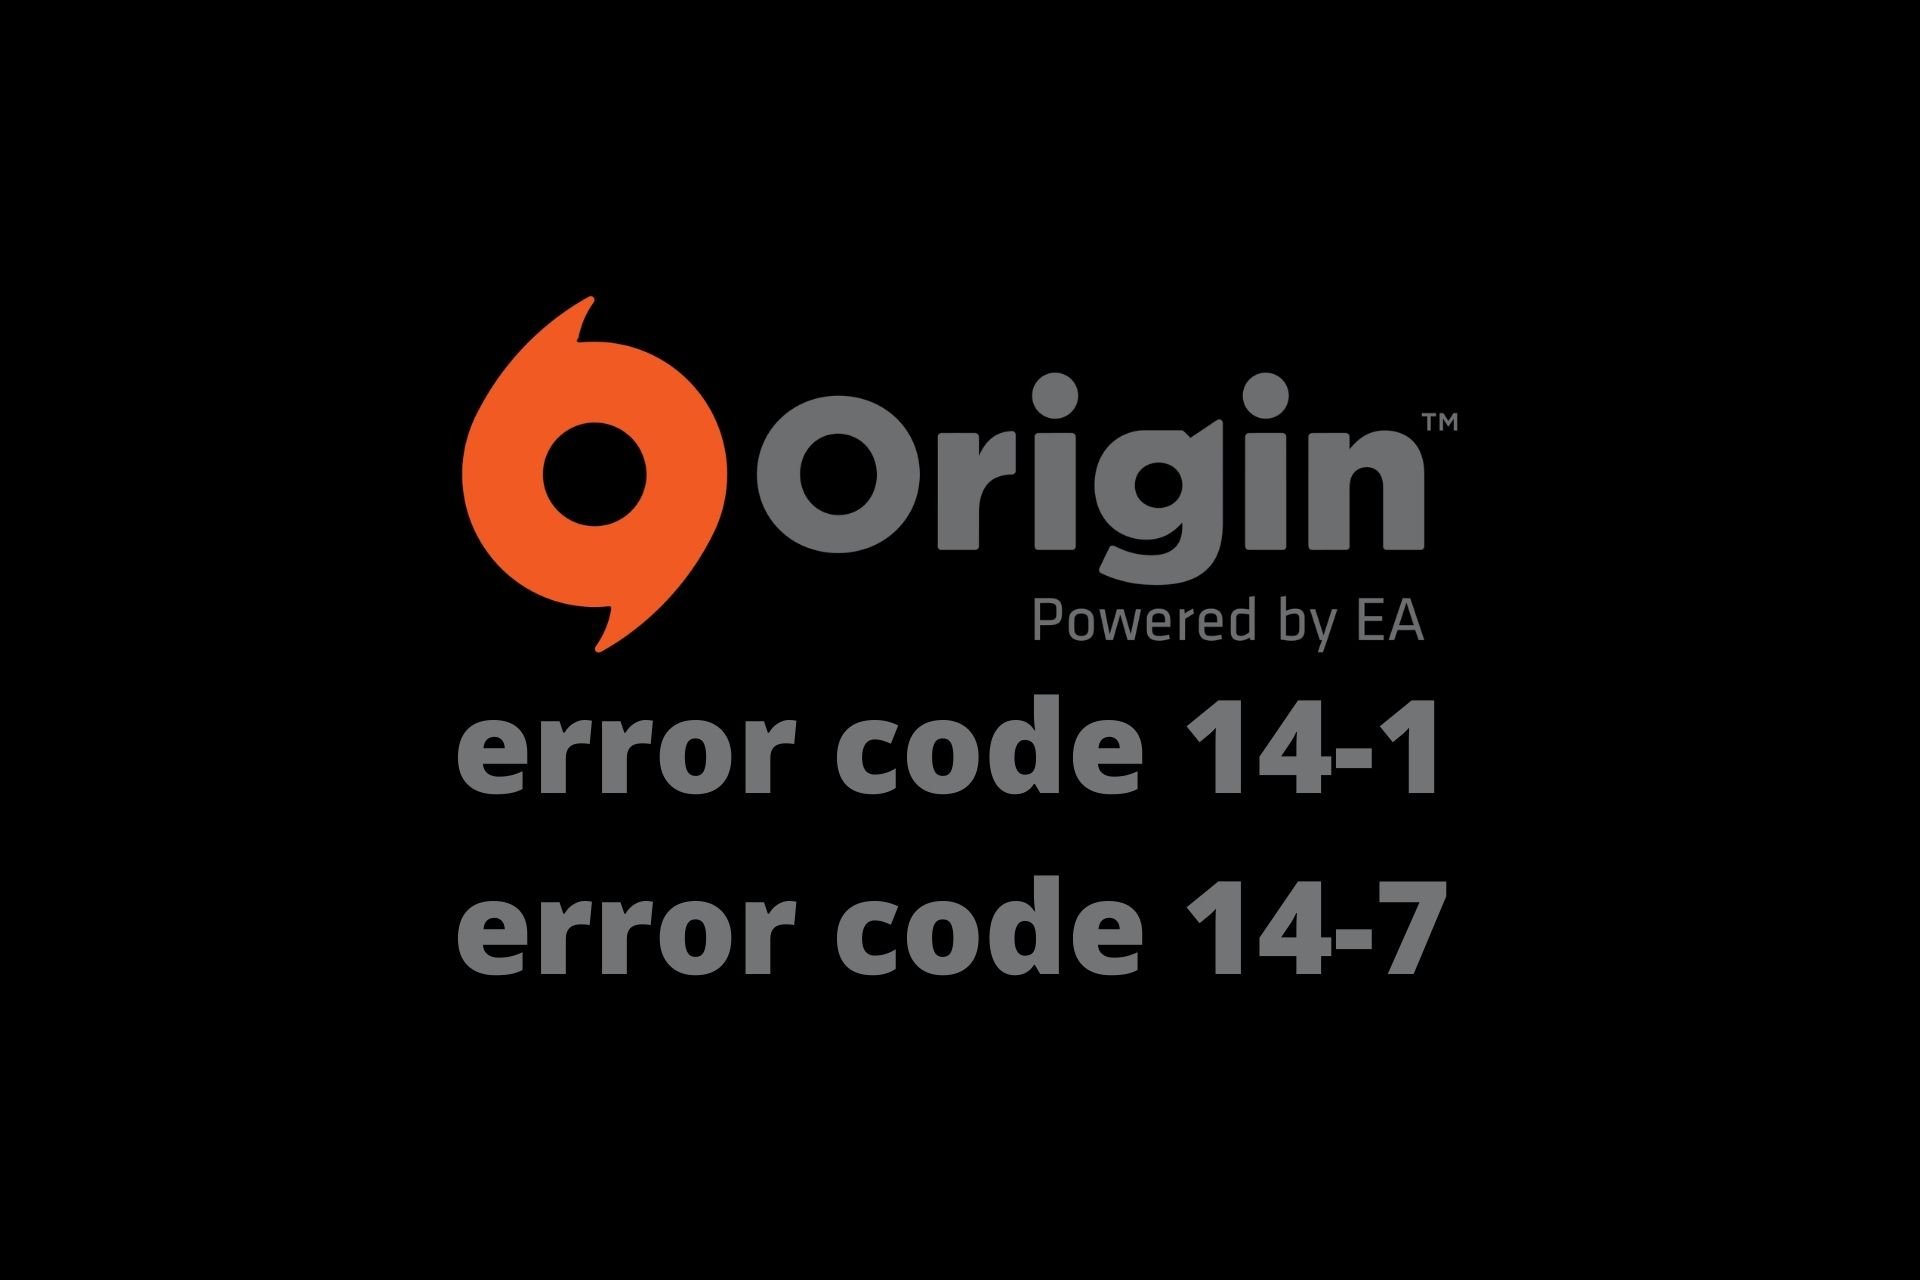 Origin error code 14-1 error code 14-7